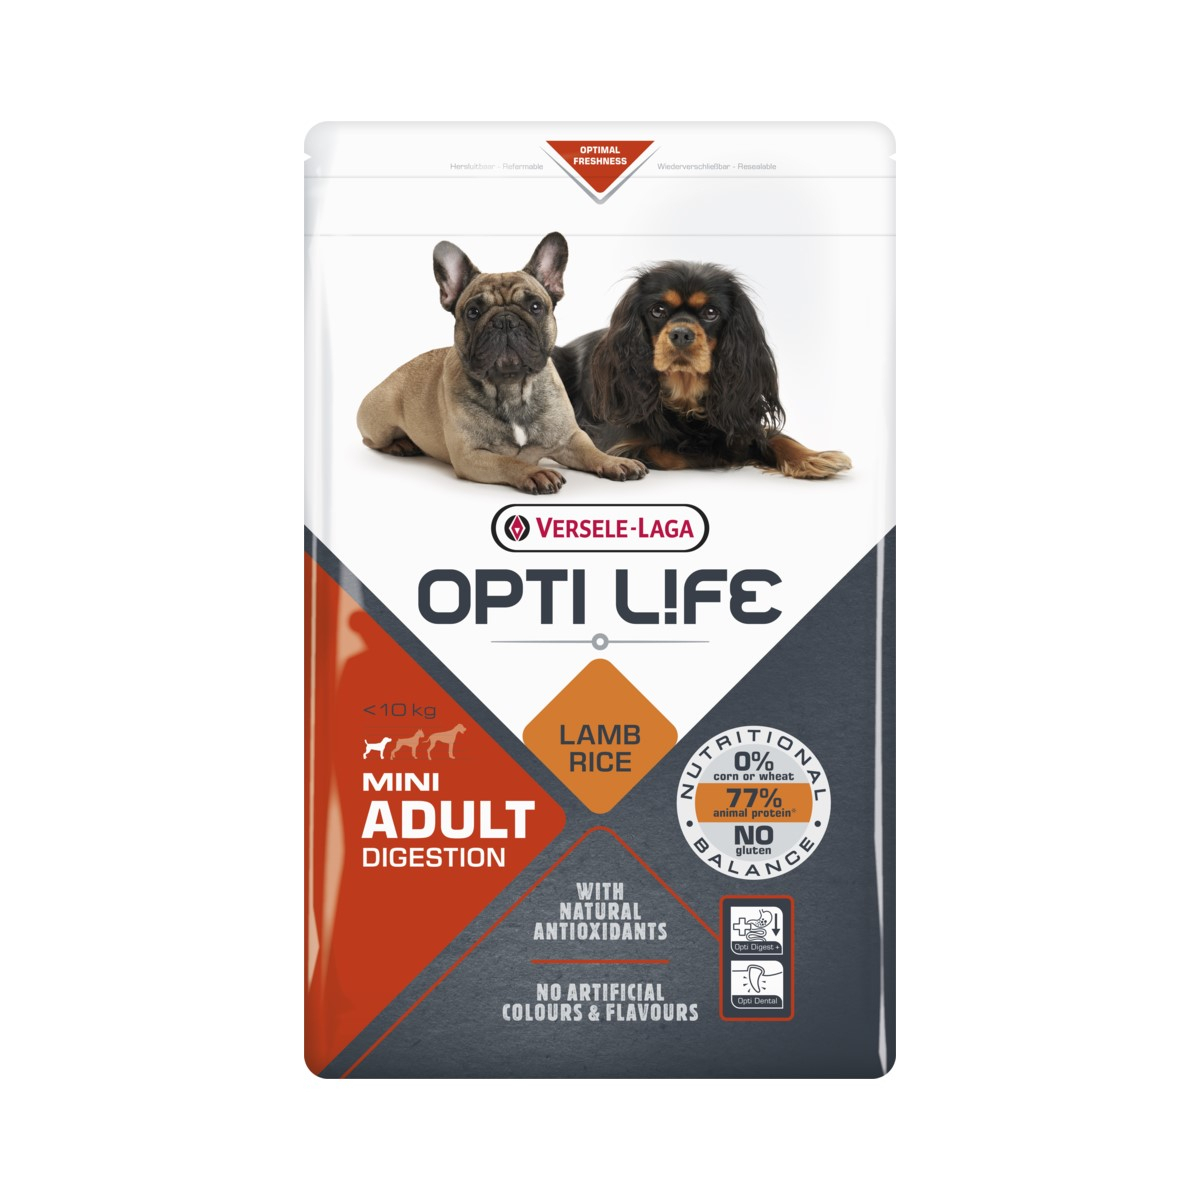 Opti Life Adult Digestion Mini à l'agneau pour chien sensible de petite taille